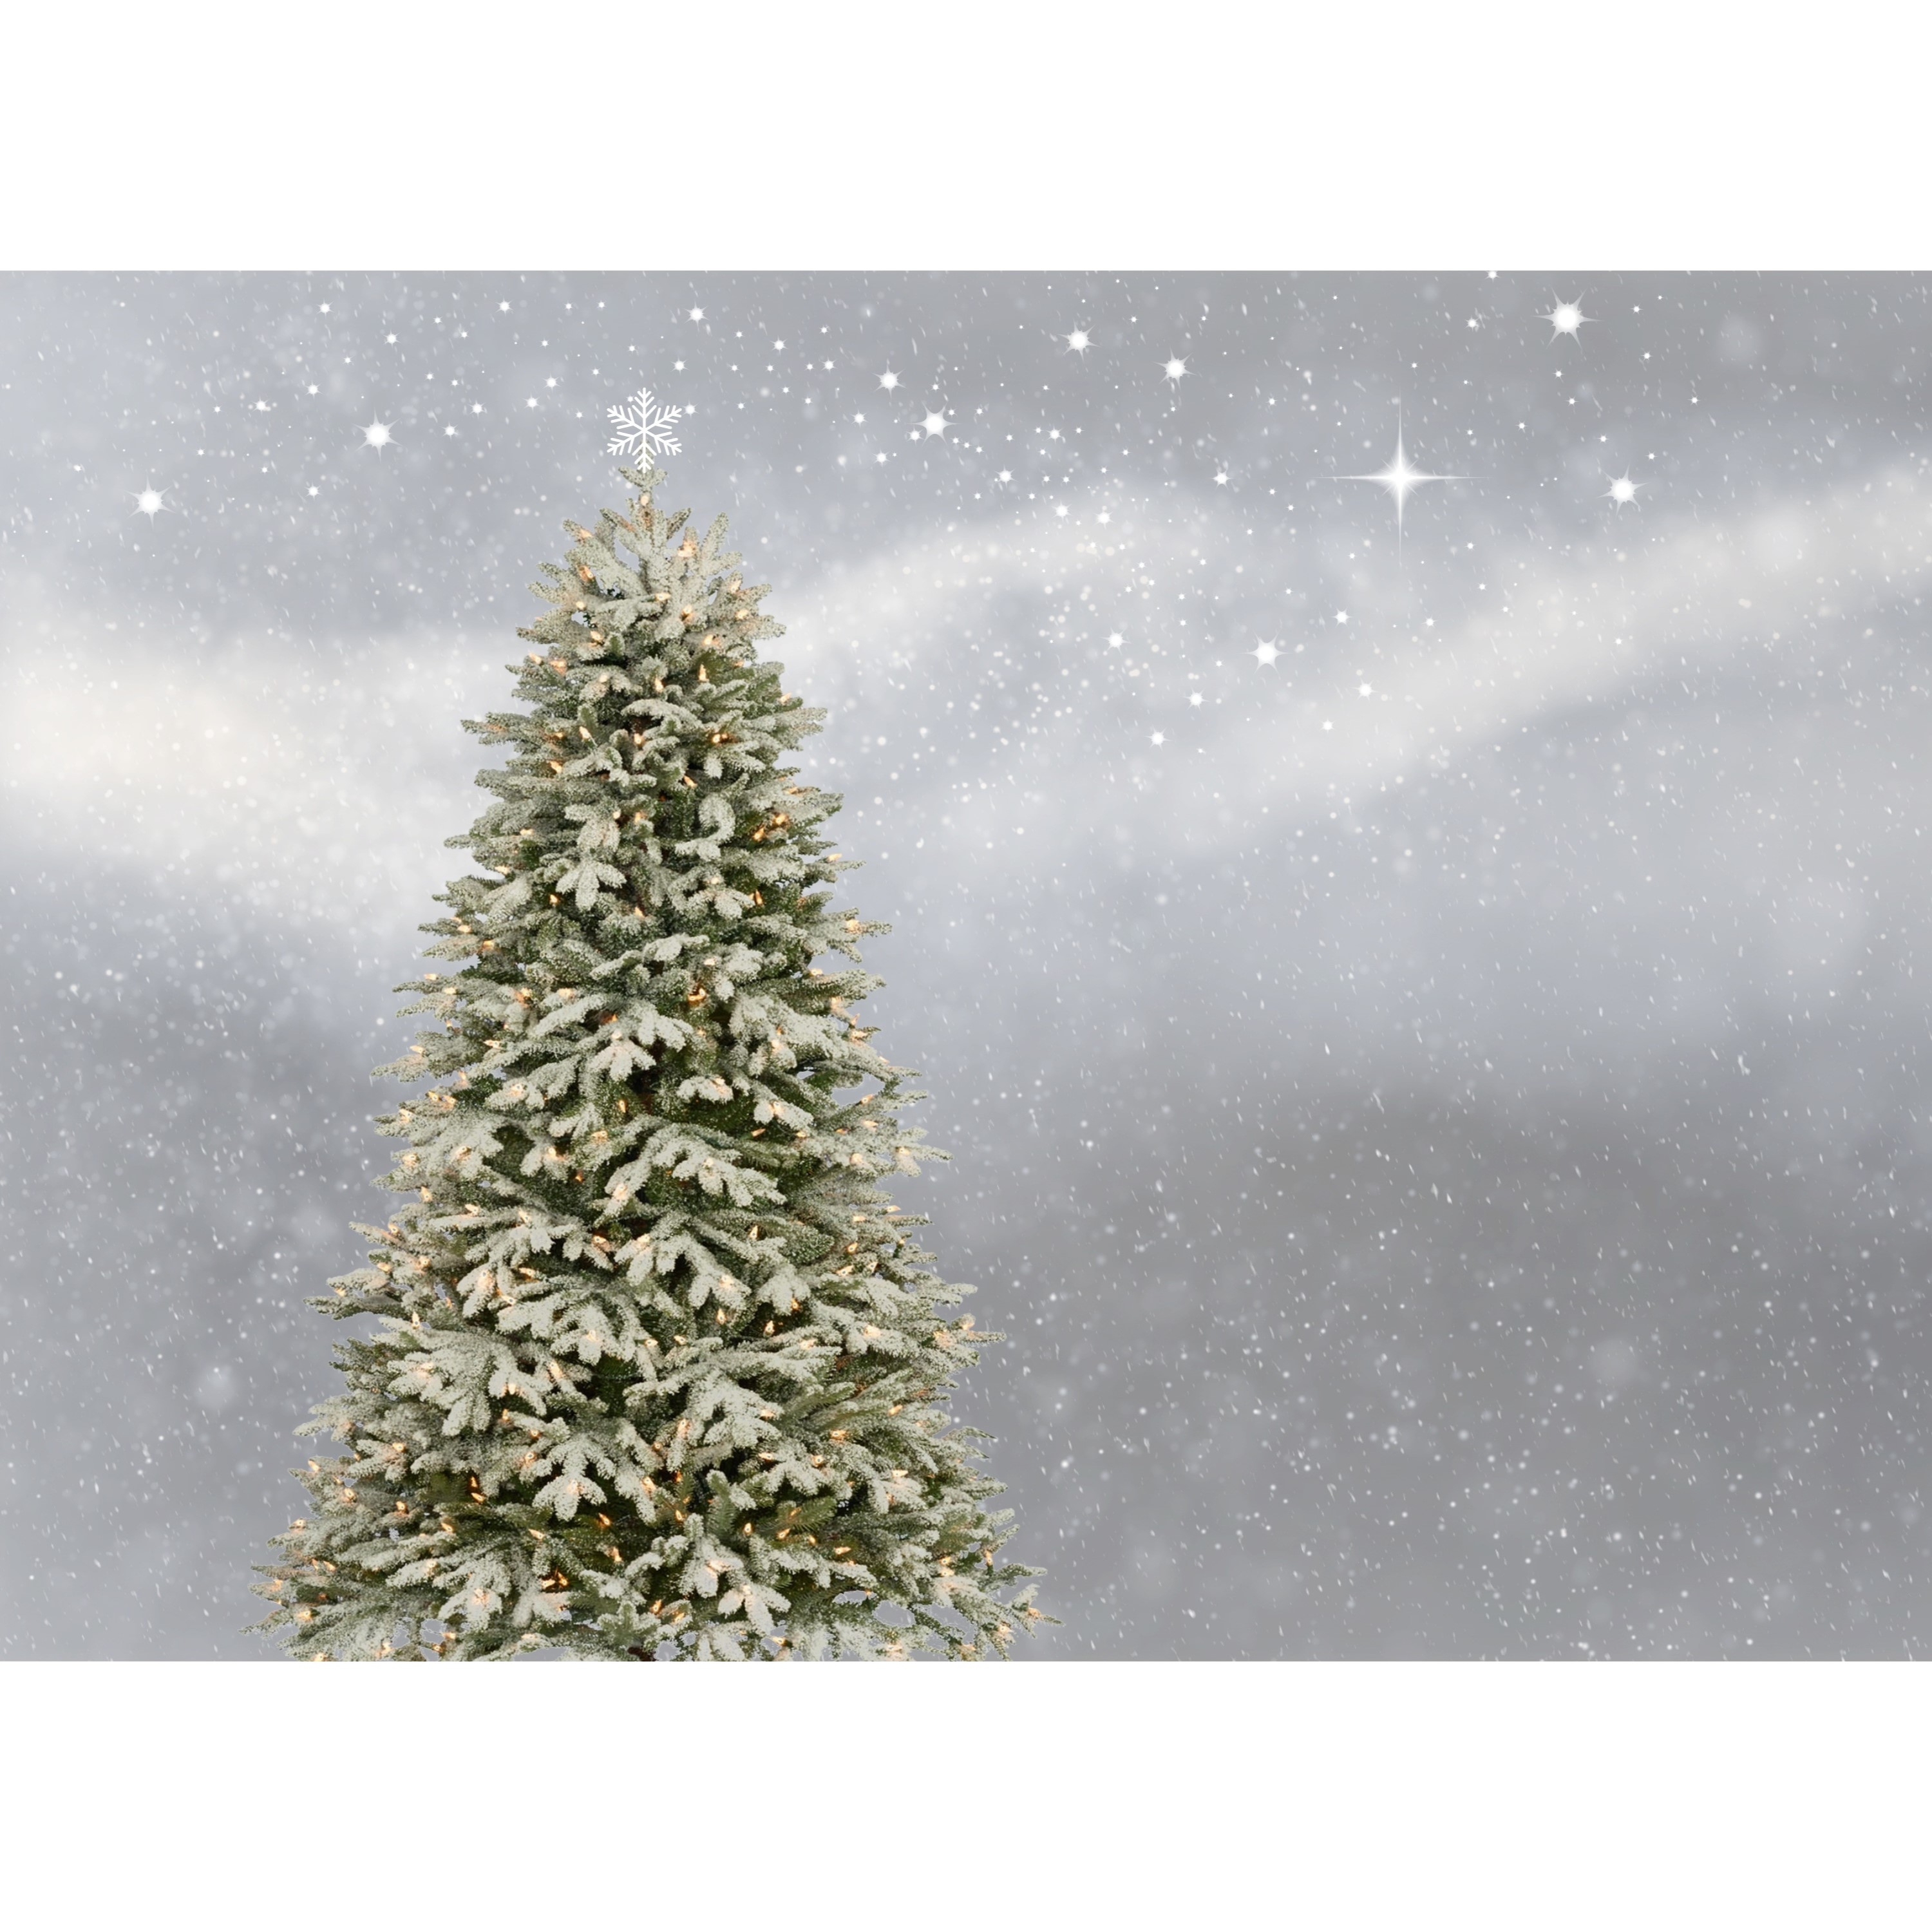 50 Merry & Joyful Christmas Songs